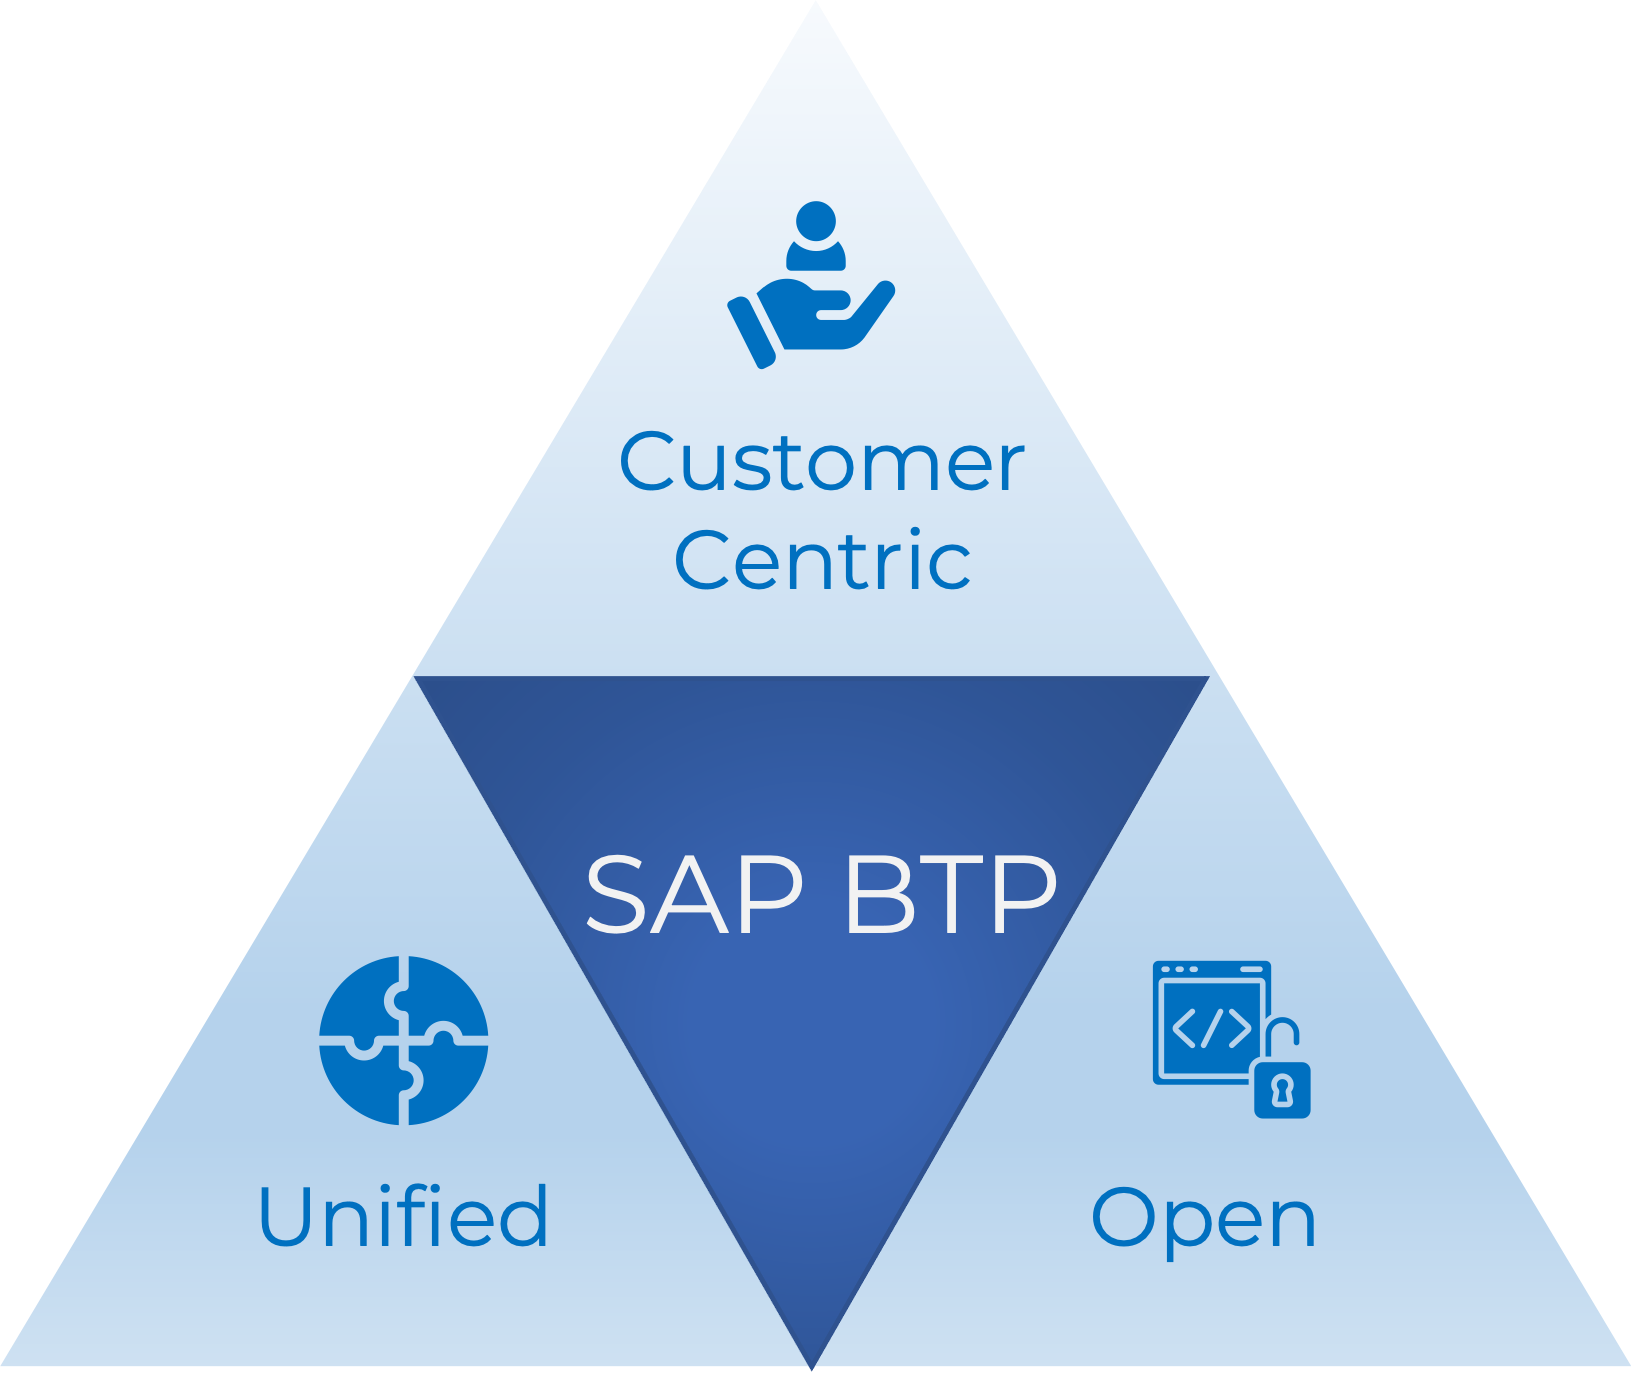 SAP BTP - Customer Centric, Unified, Open